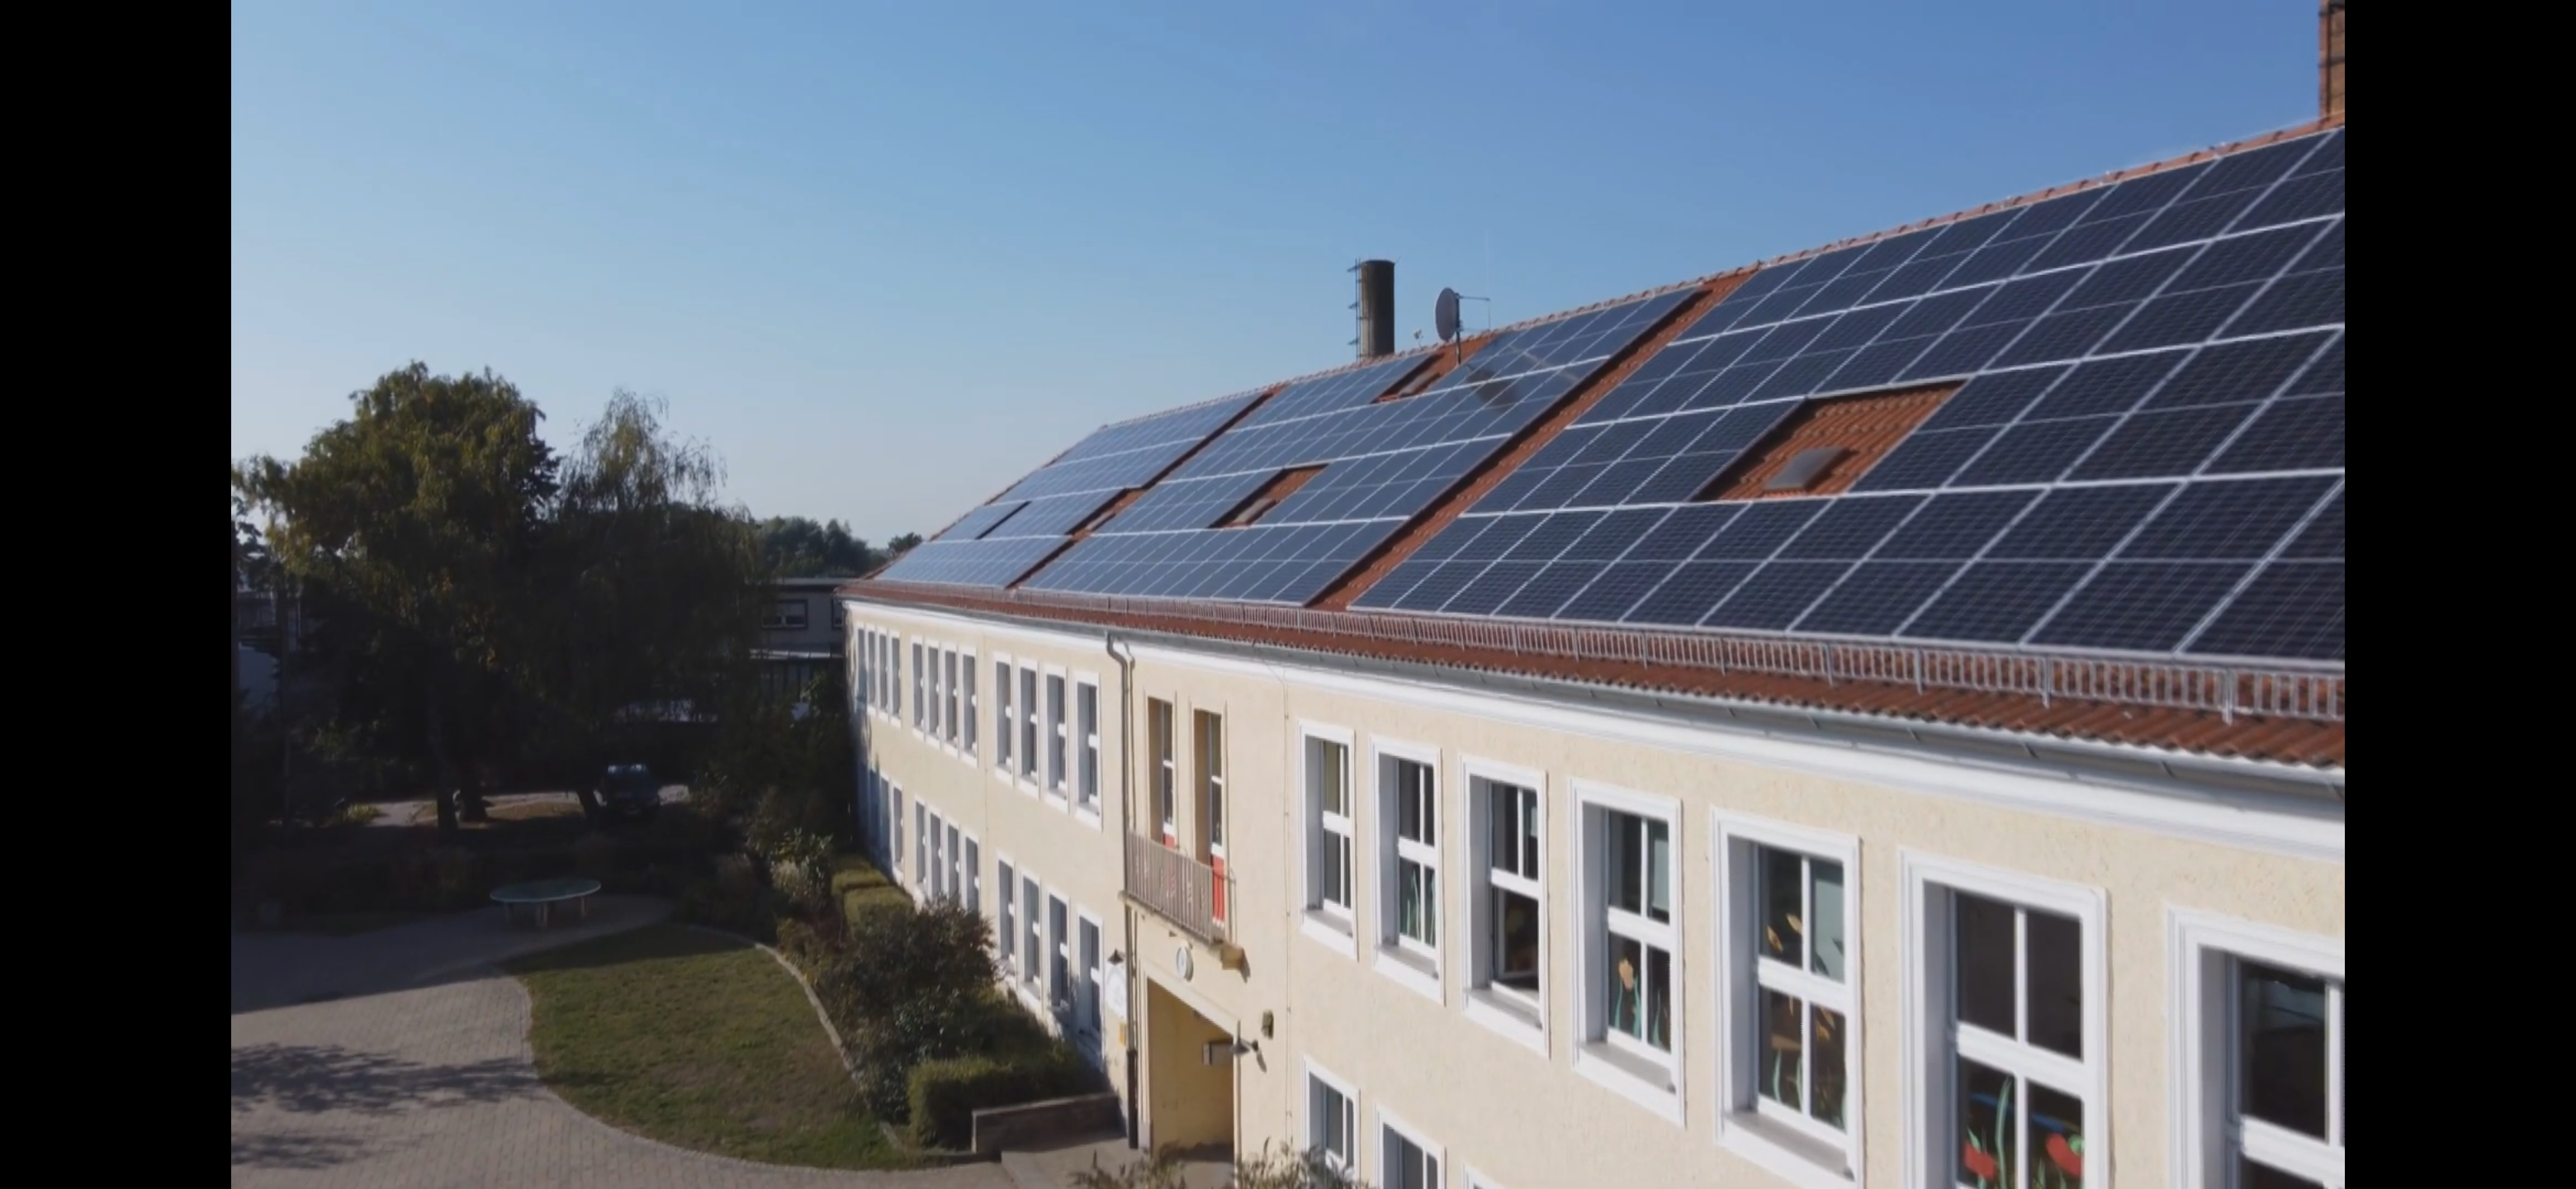 Solardachanlage Bürgerenergie Oder-Spree eG 